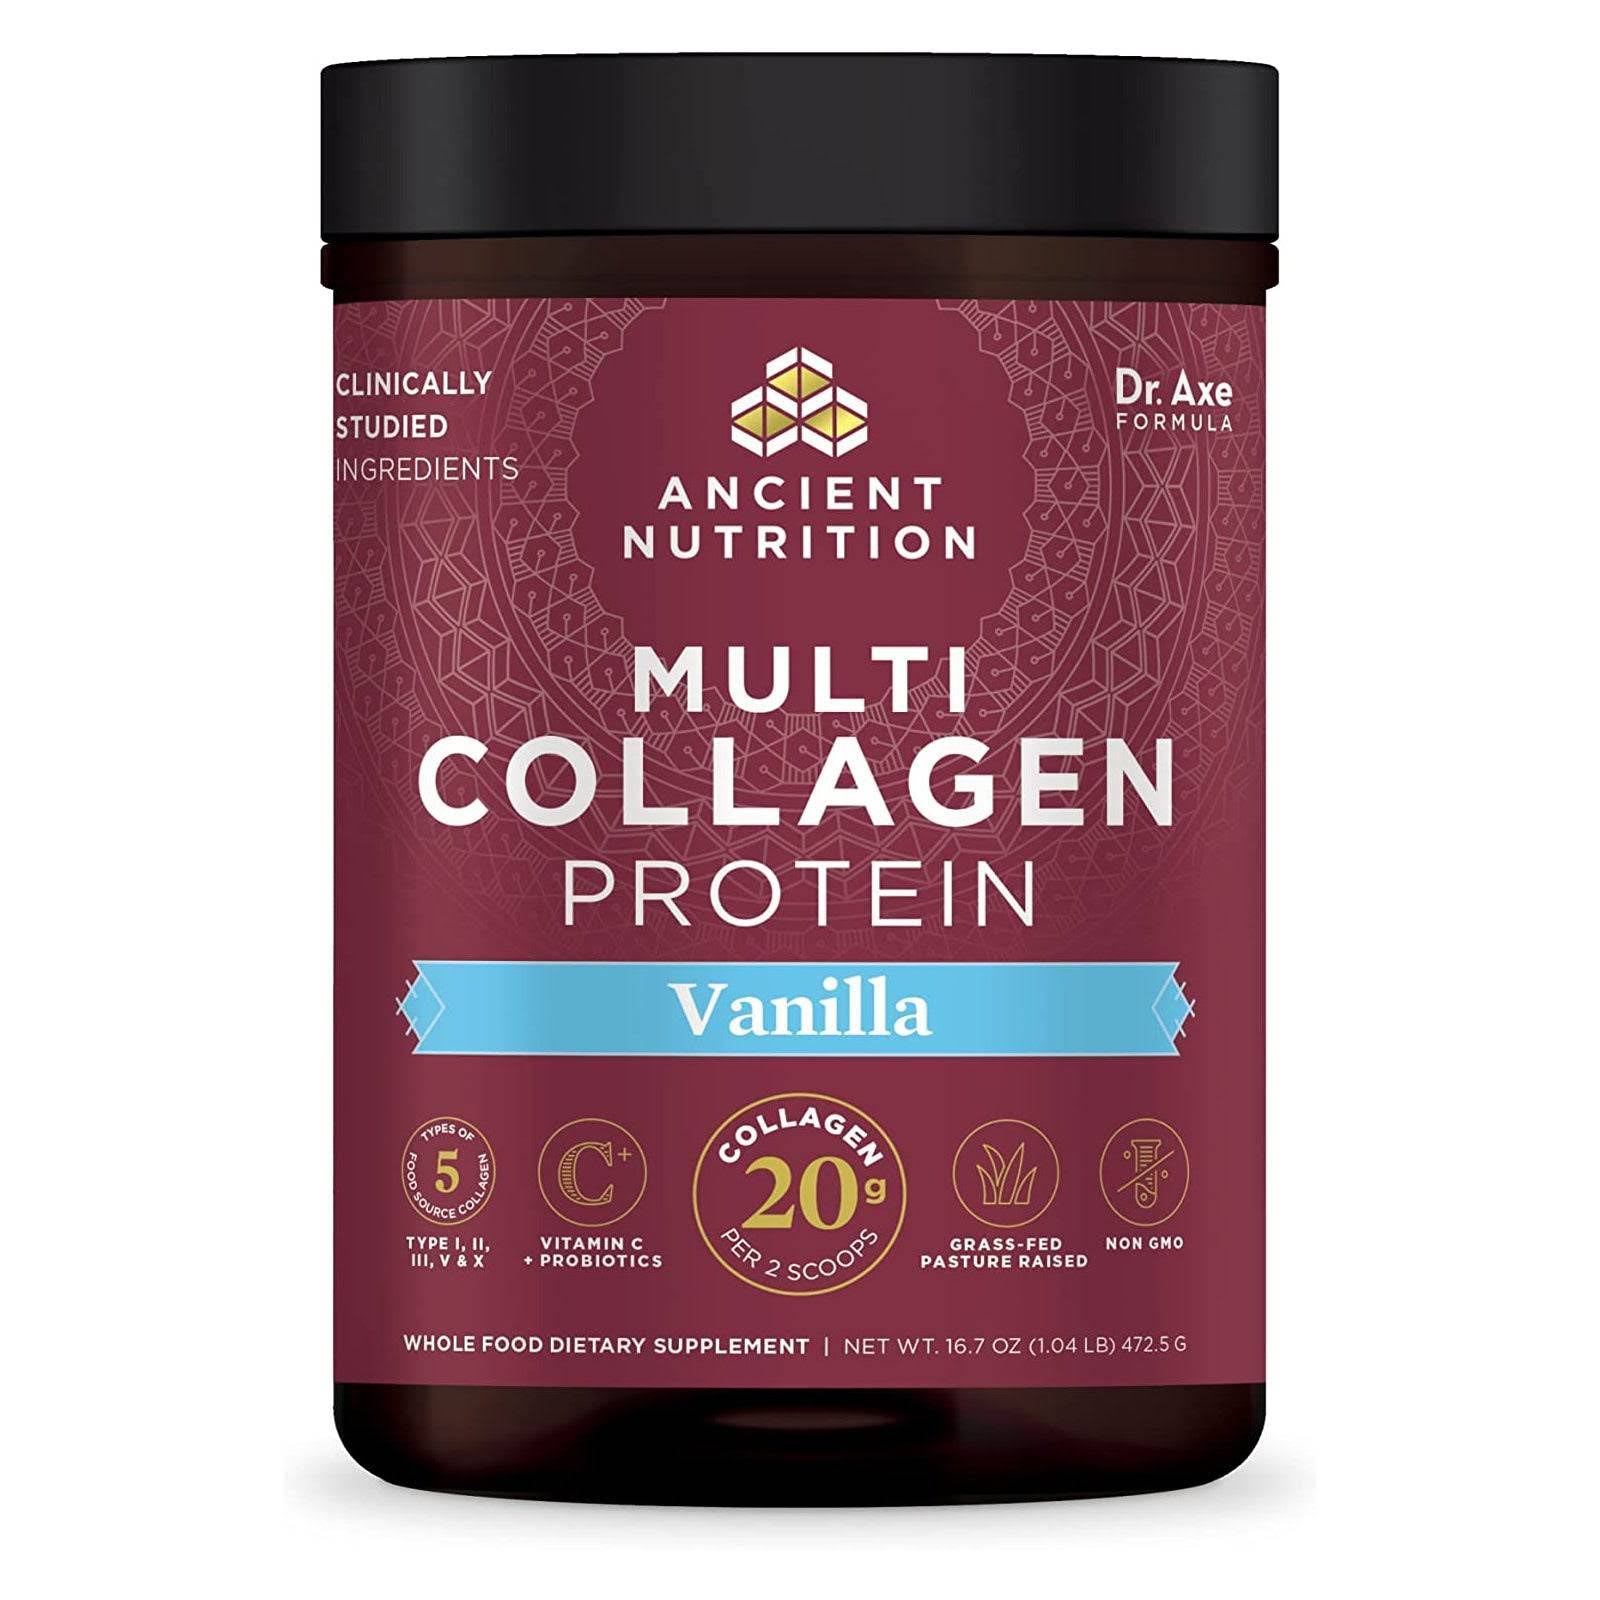 Ancient Nutrition - Multi Collagen Protein Powder Vanilla - 16.7 oz.